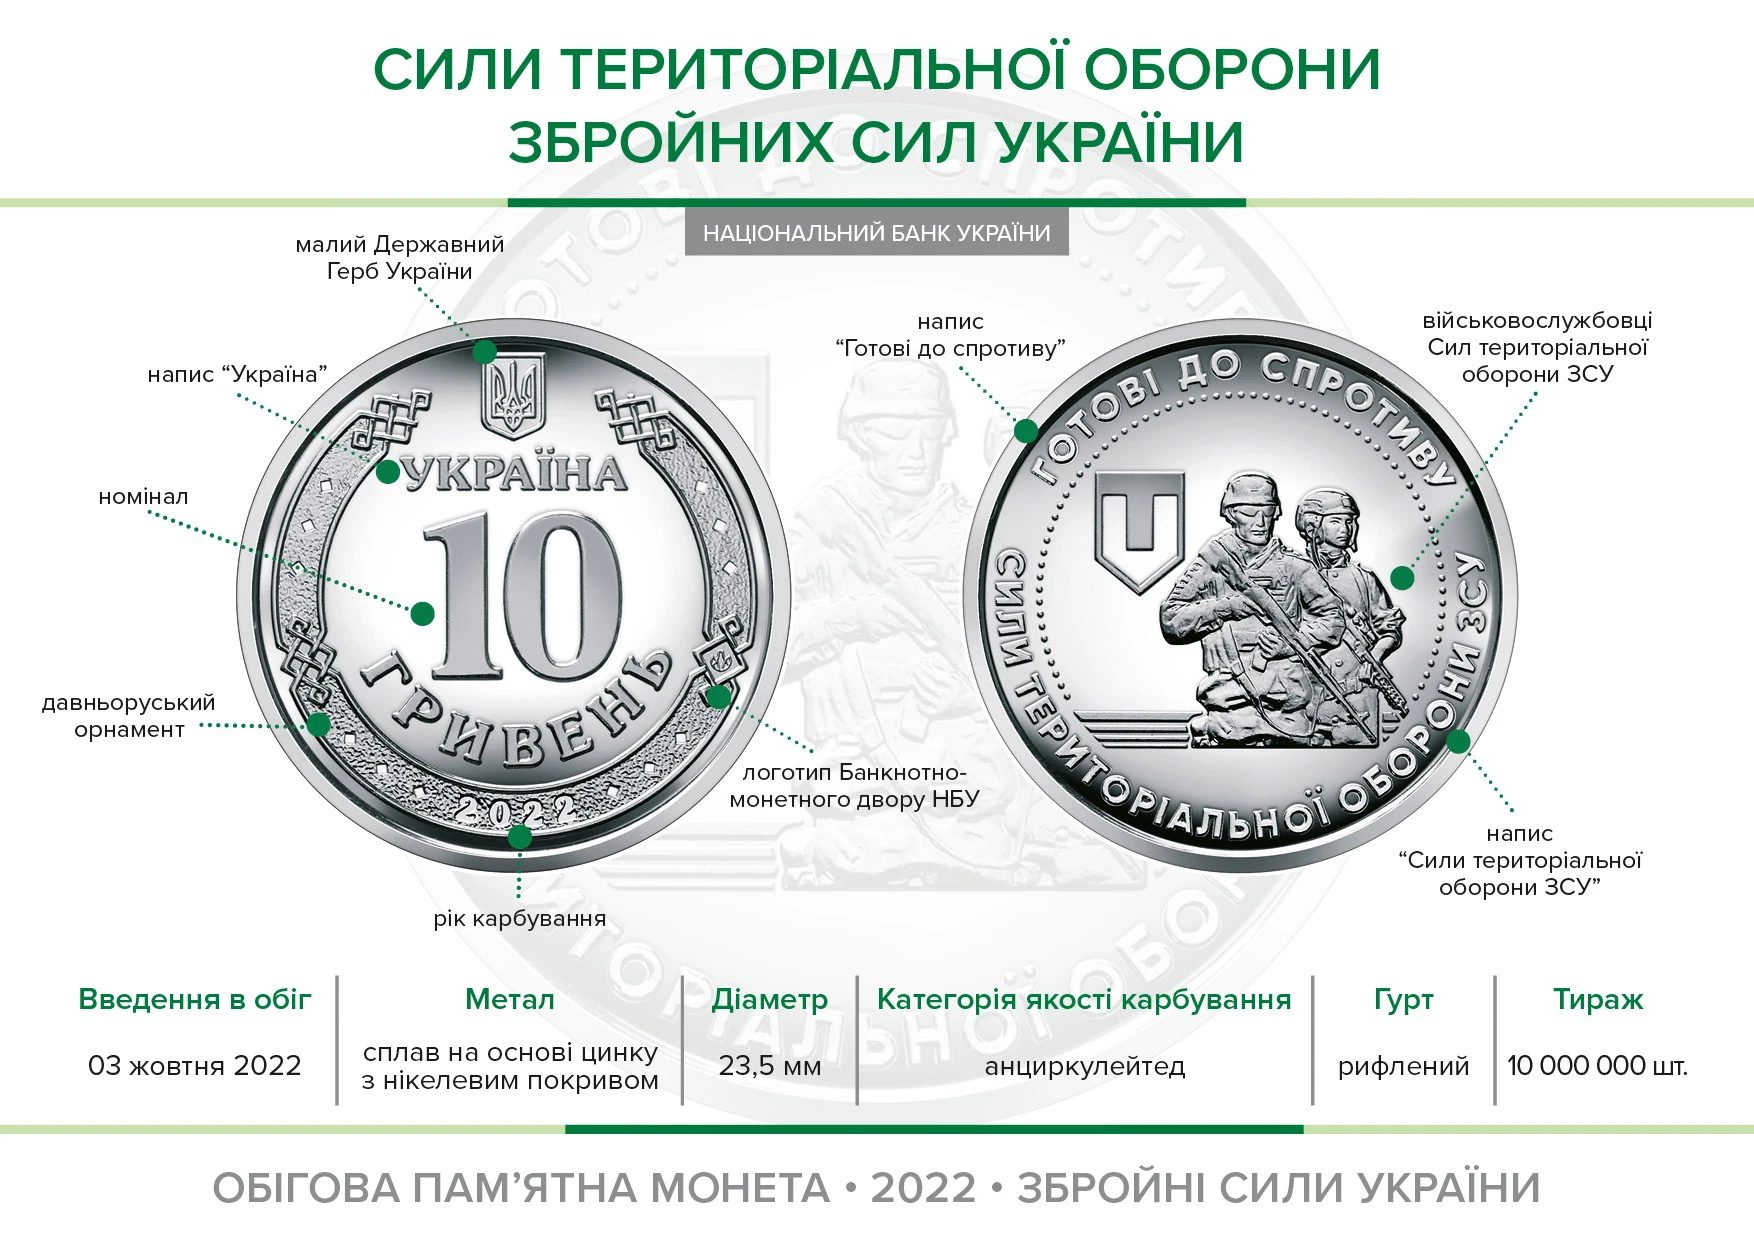 Нацбанк презентував нову пам’ятну монету «Сили територіальної оборони Збройних Сил України»